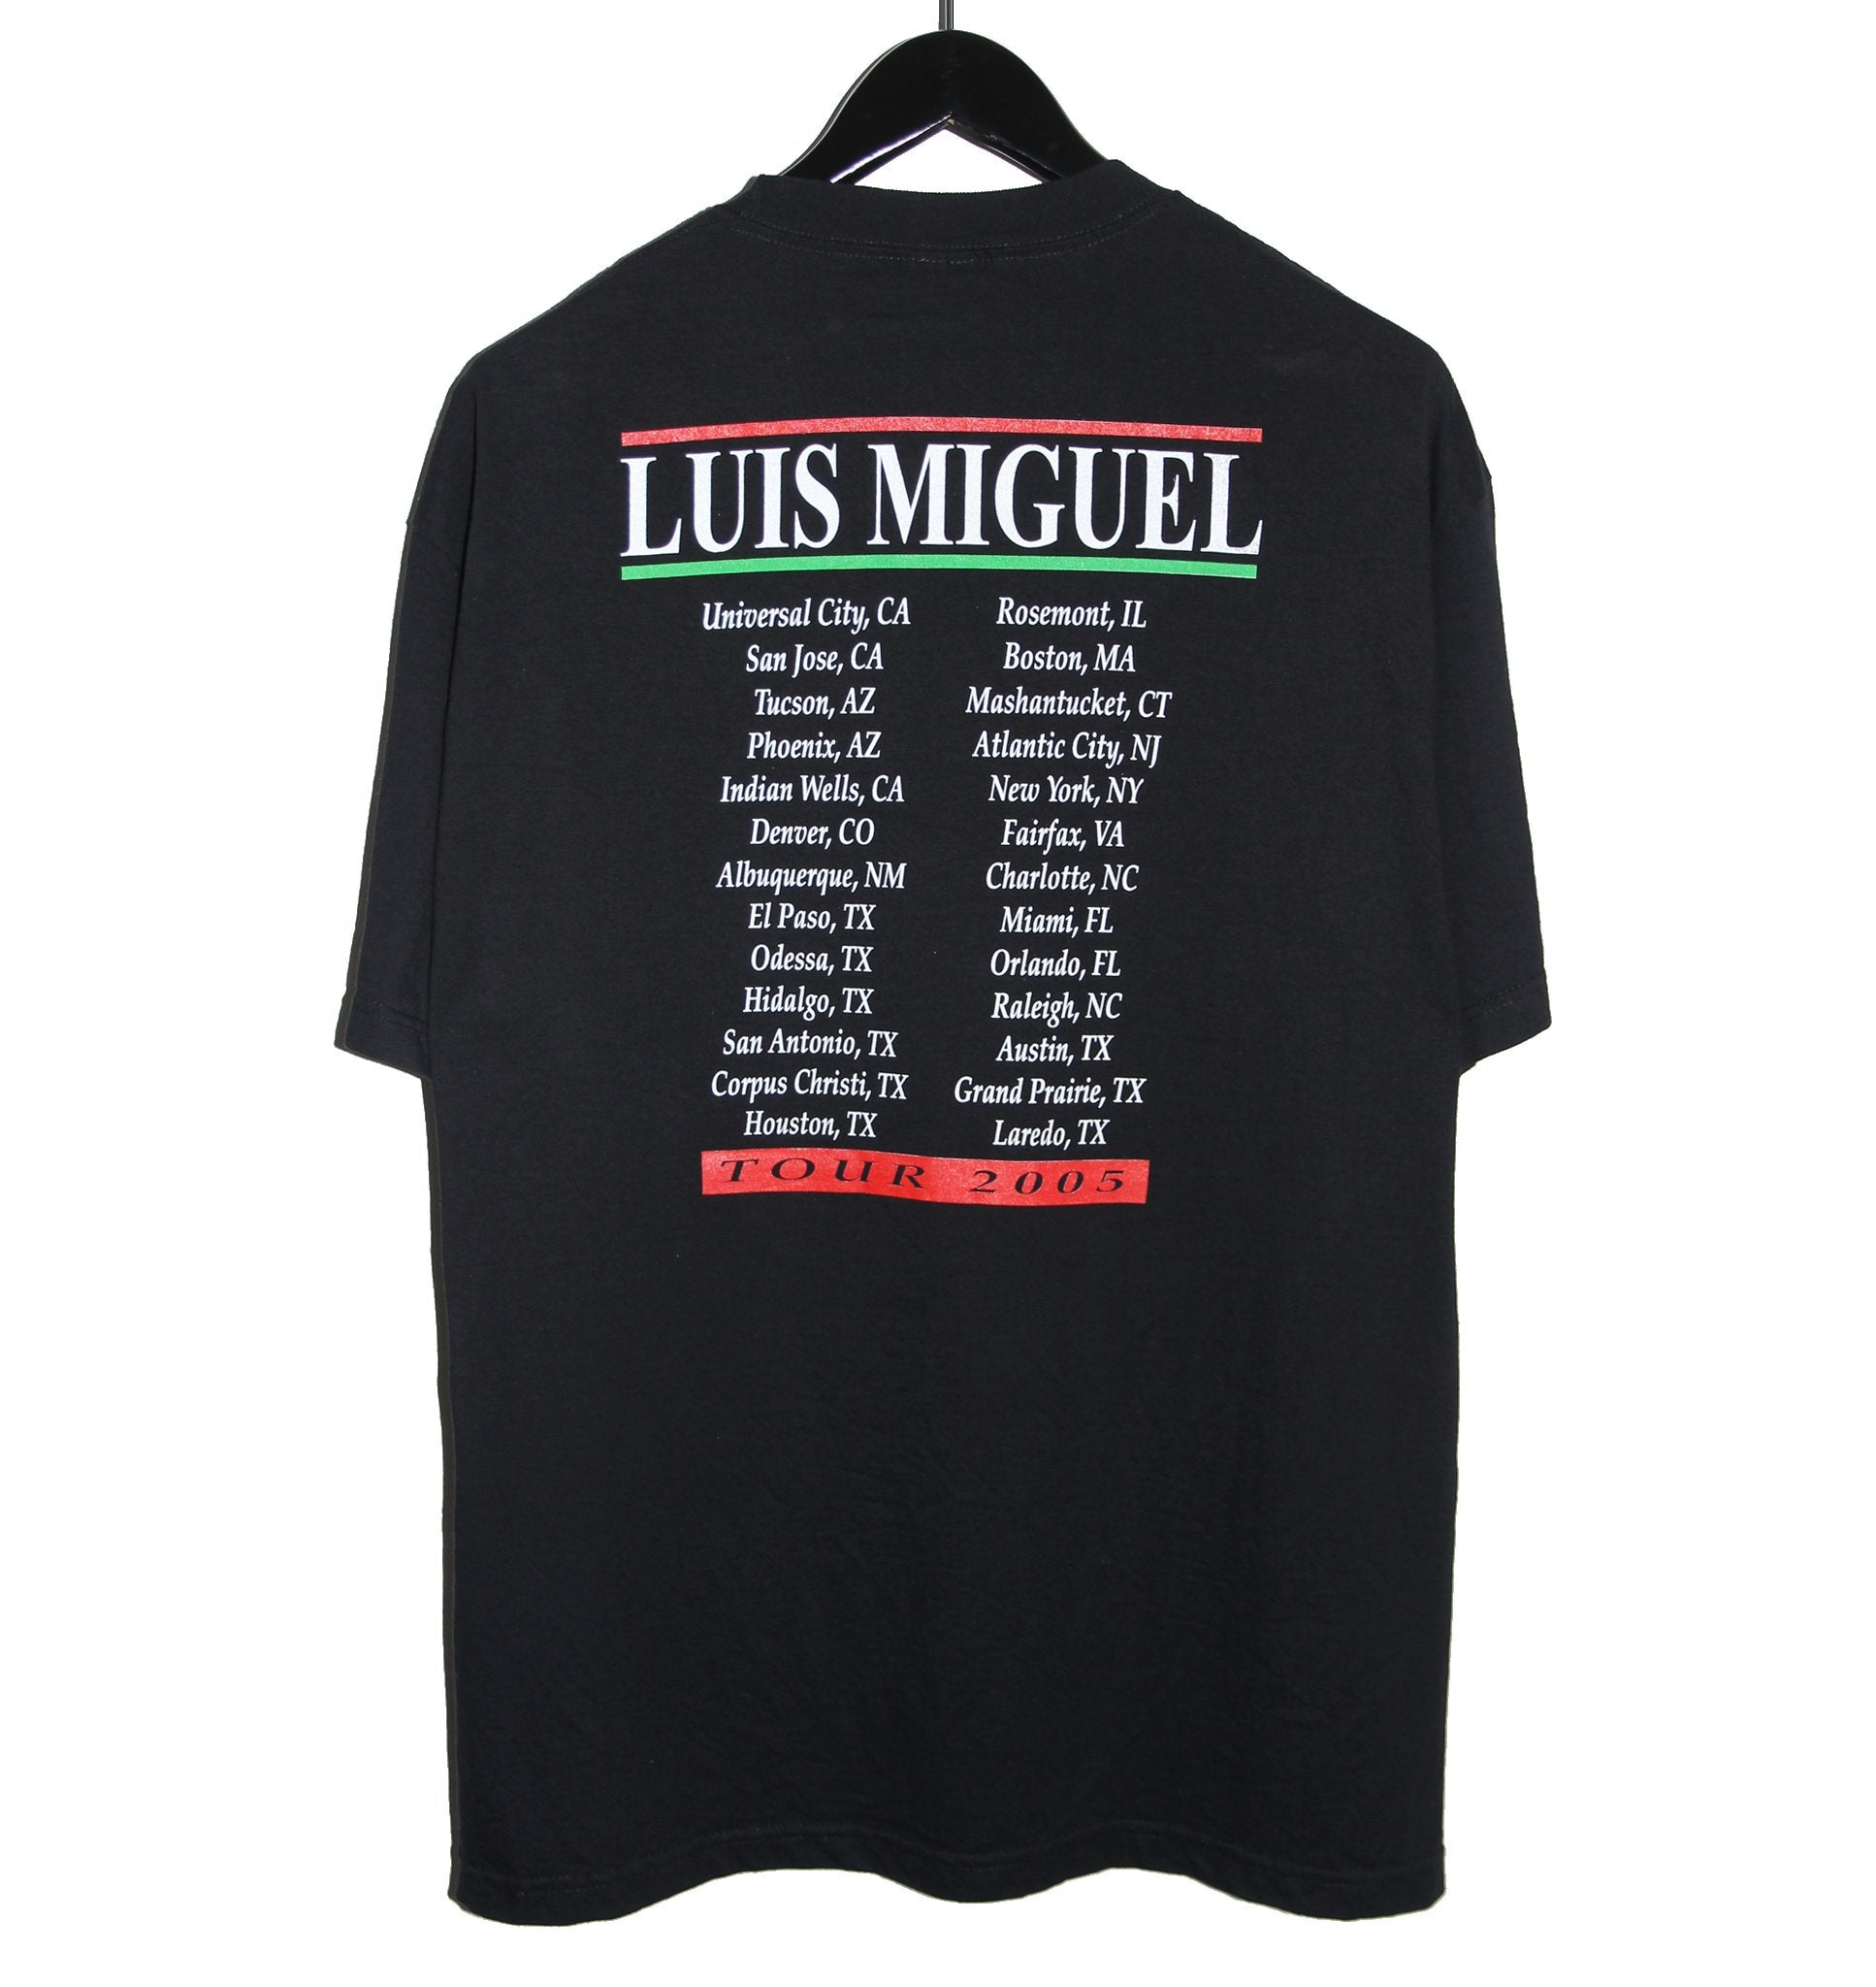 Luis Miguel 2005 Tour Shirt - Faded AU